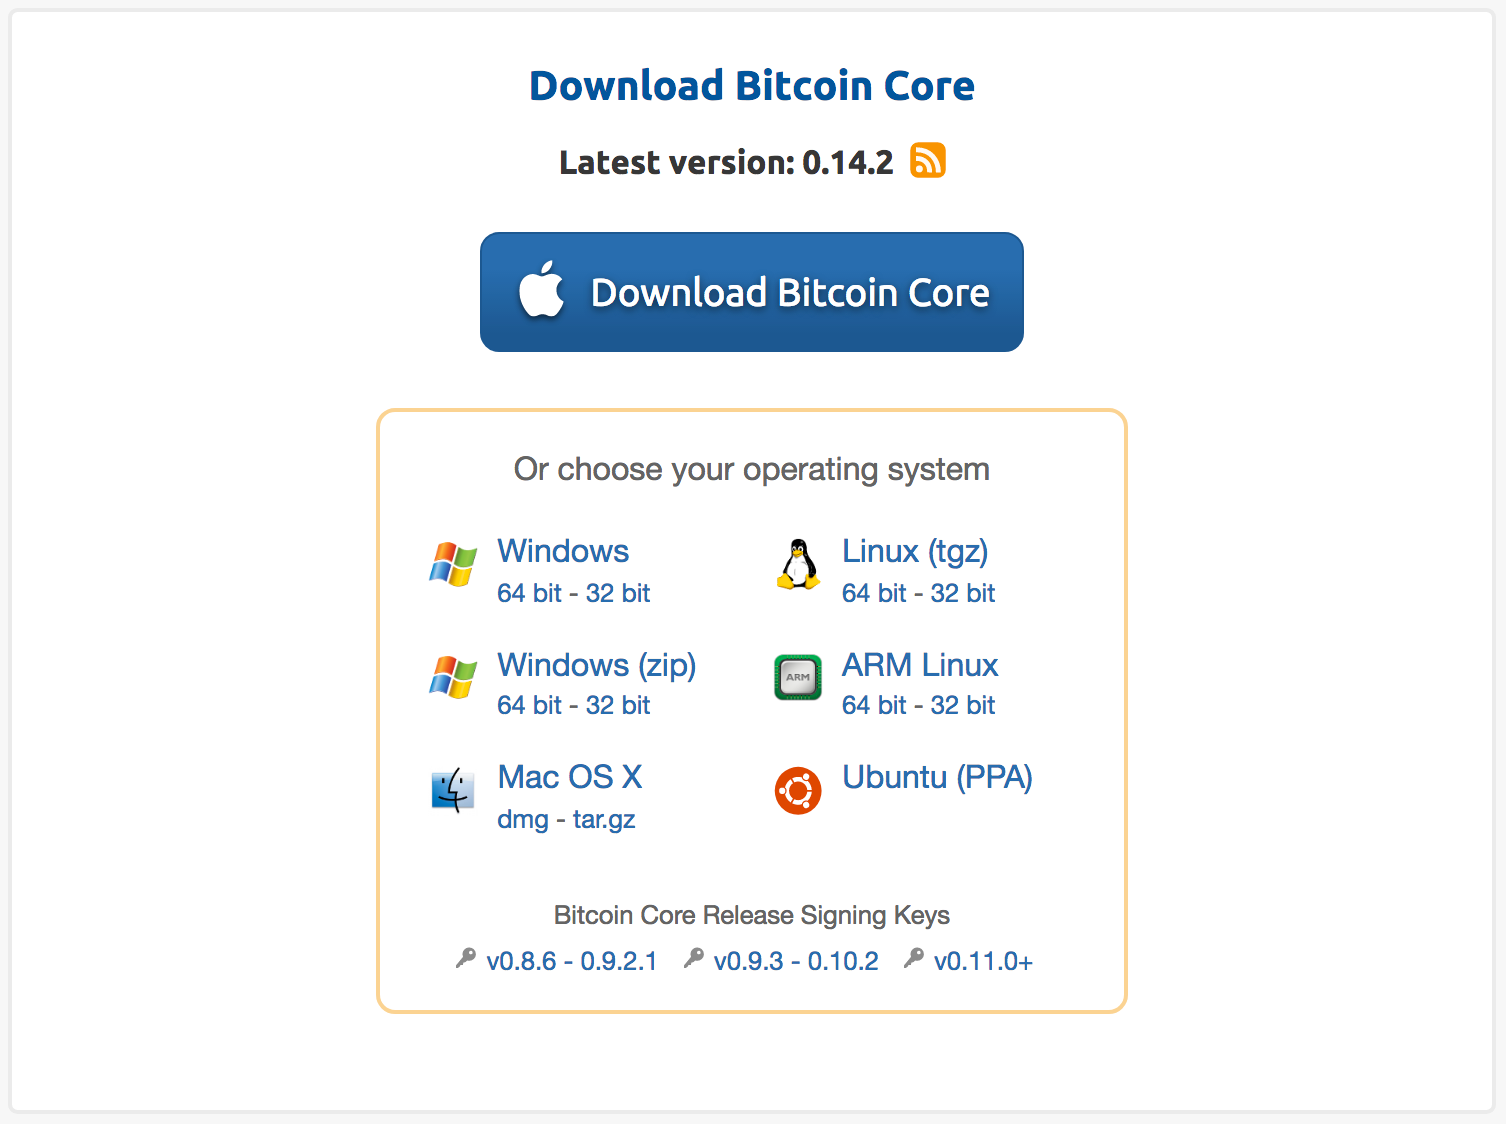 Bitcoin Core Version 0.14.2